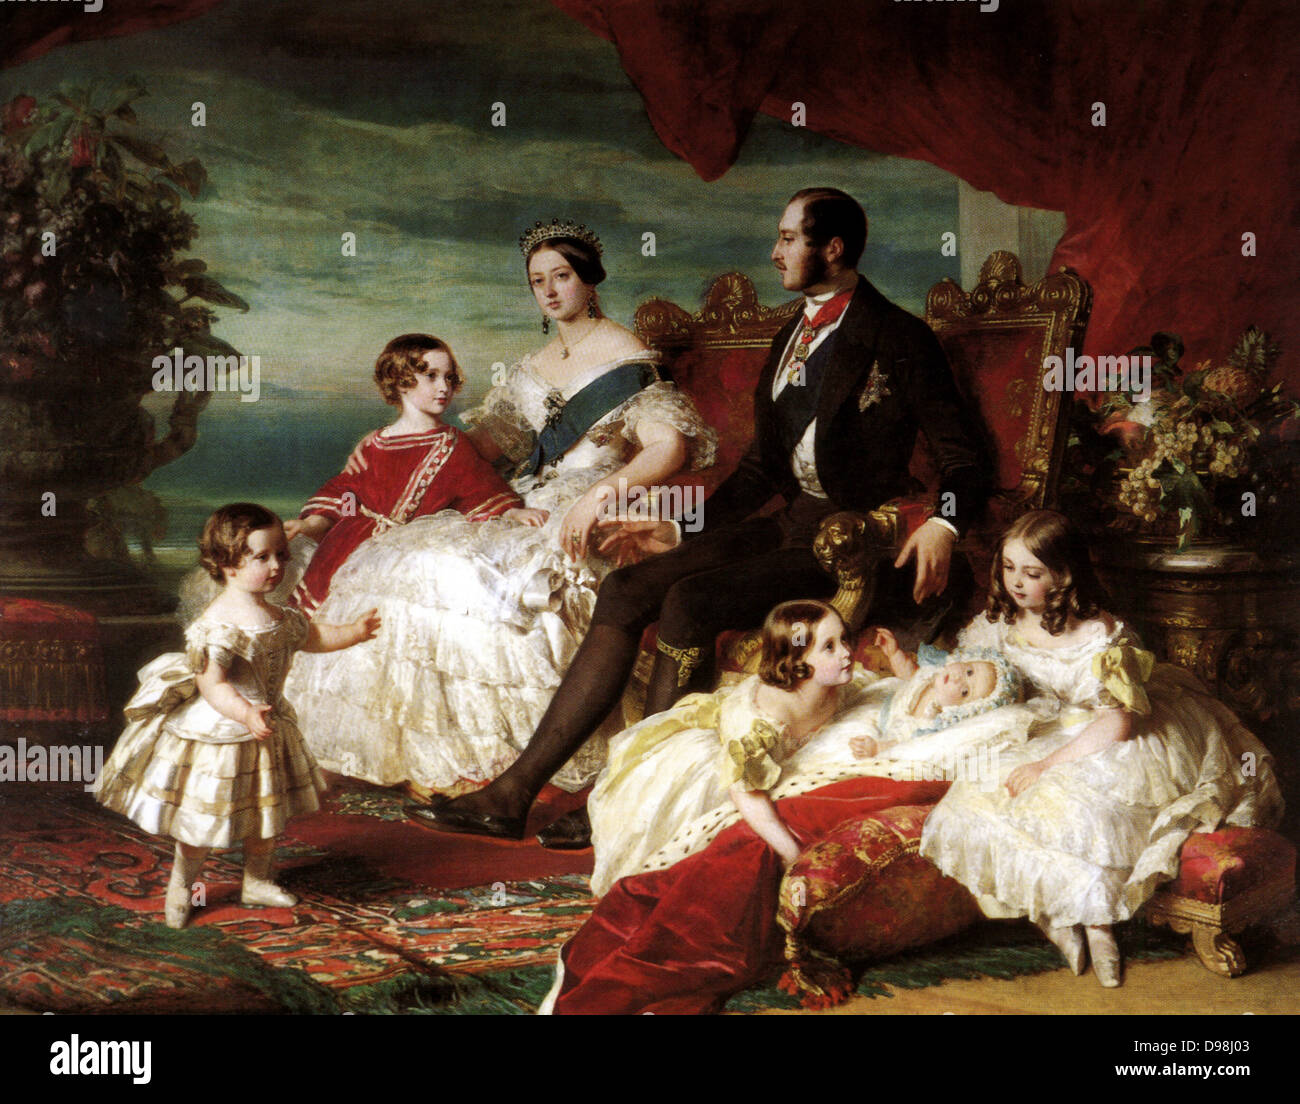 Queen Victoria, Prince Albert, and their children. Franz Xavier Winterhalter (died 1873), 1846. Oil on canvas, Stock Photo